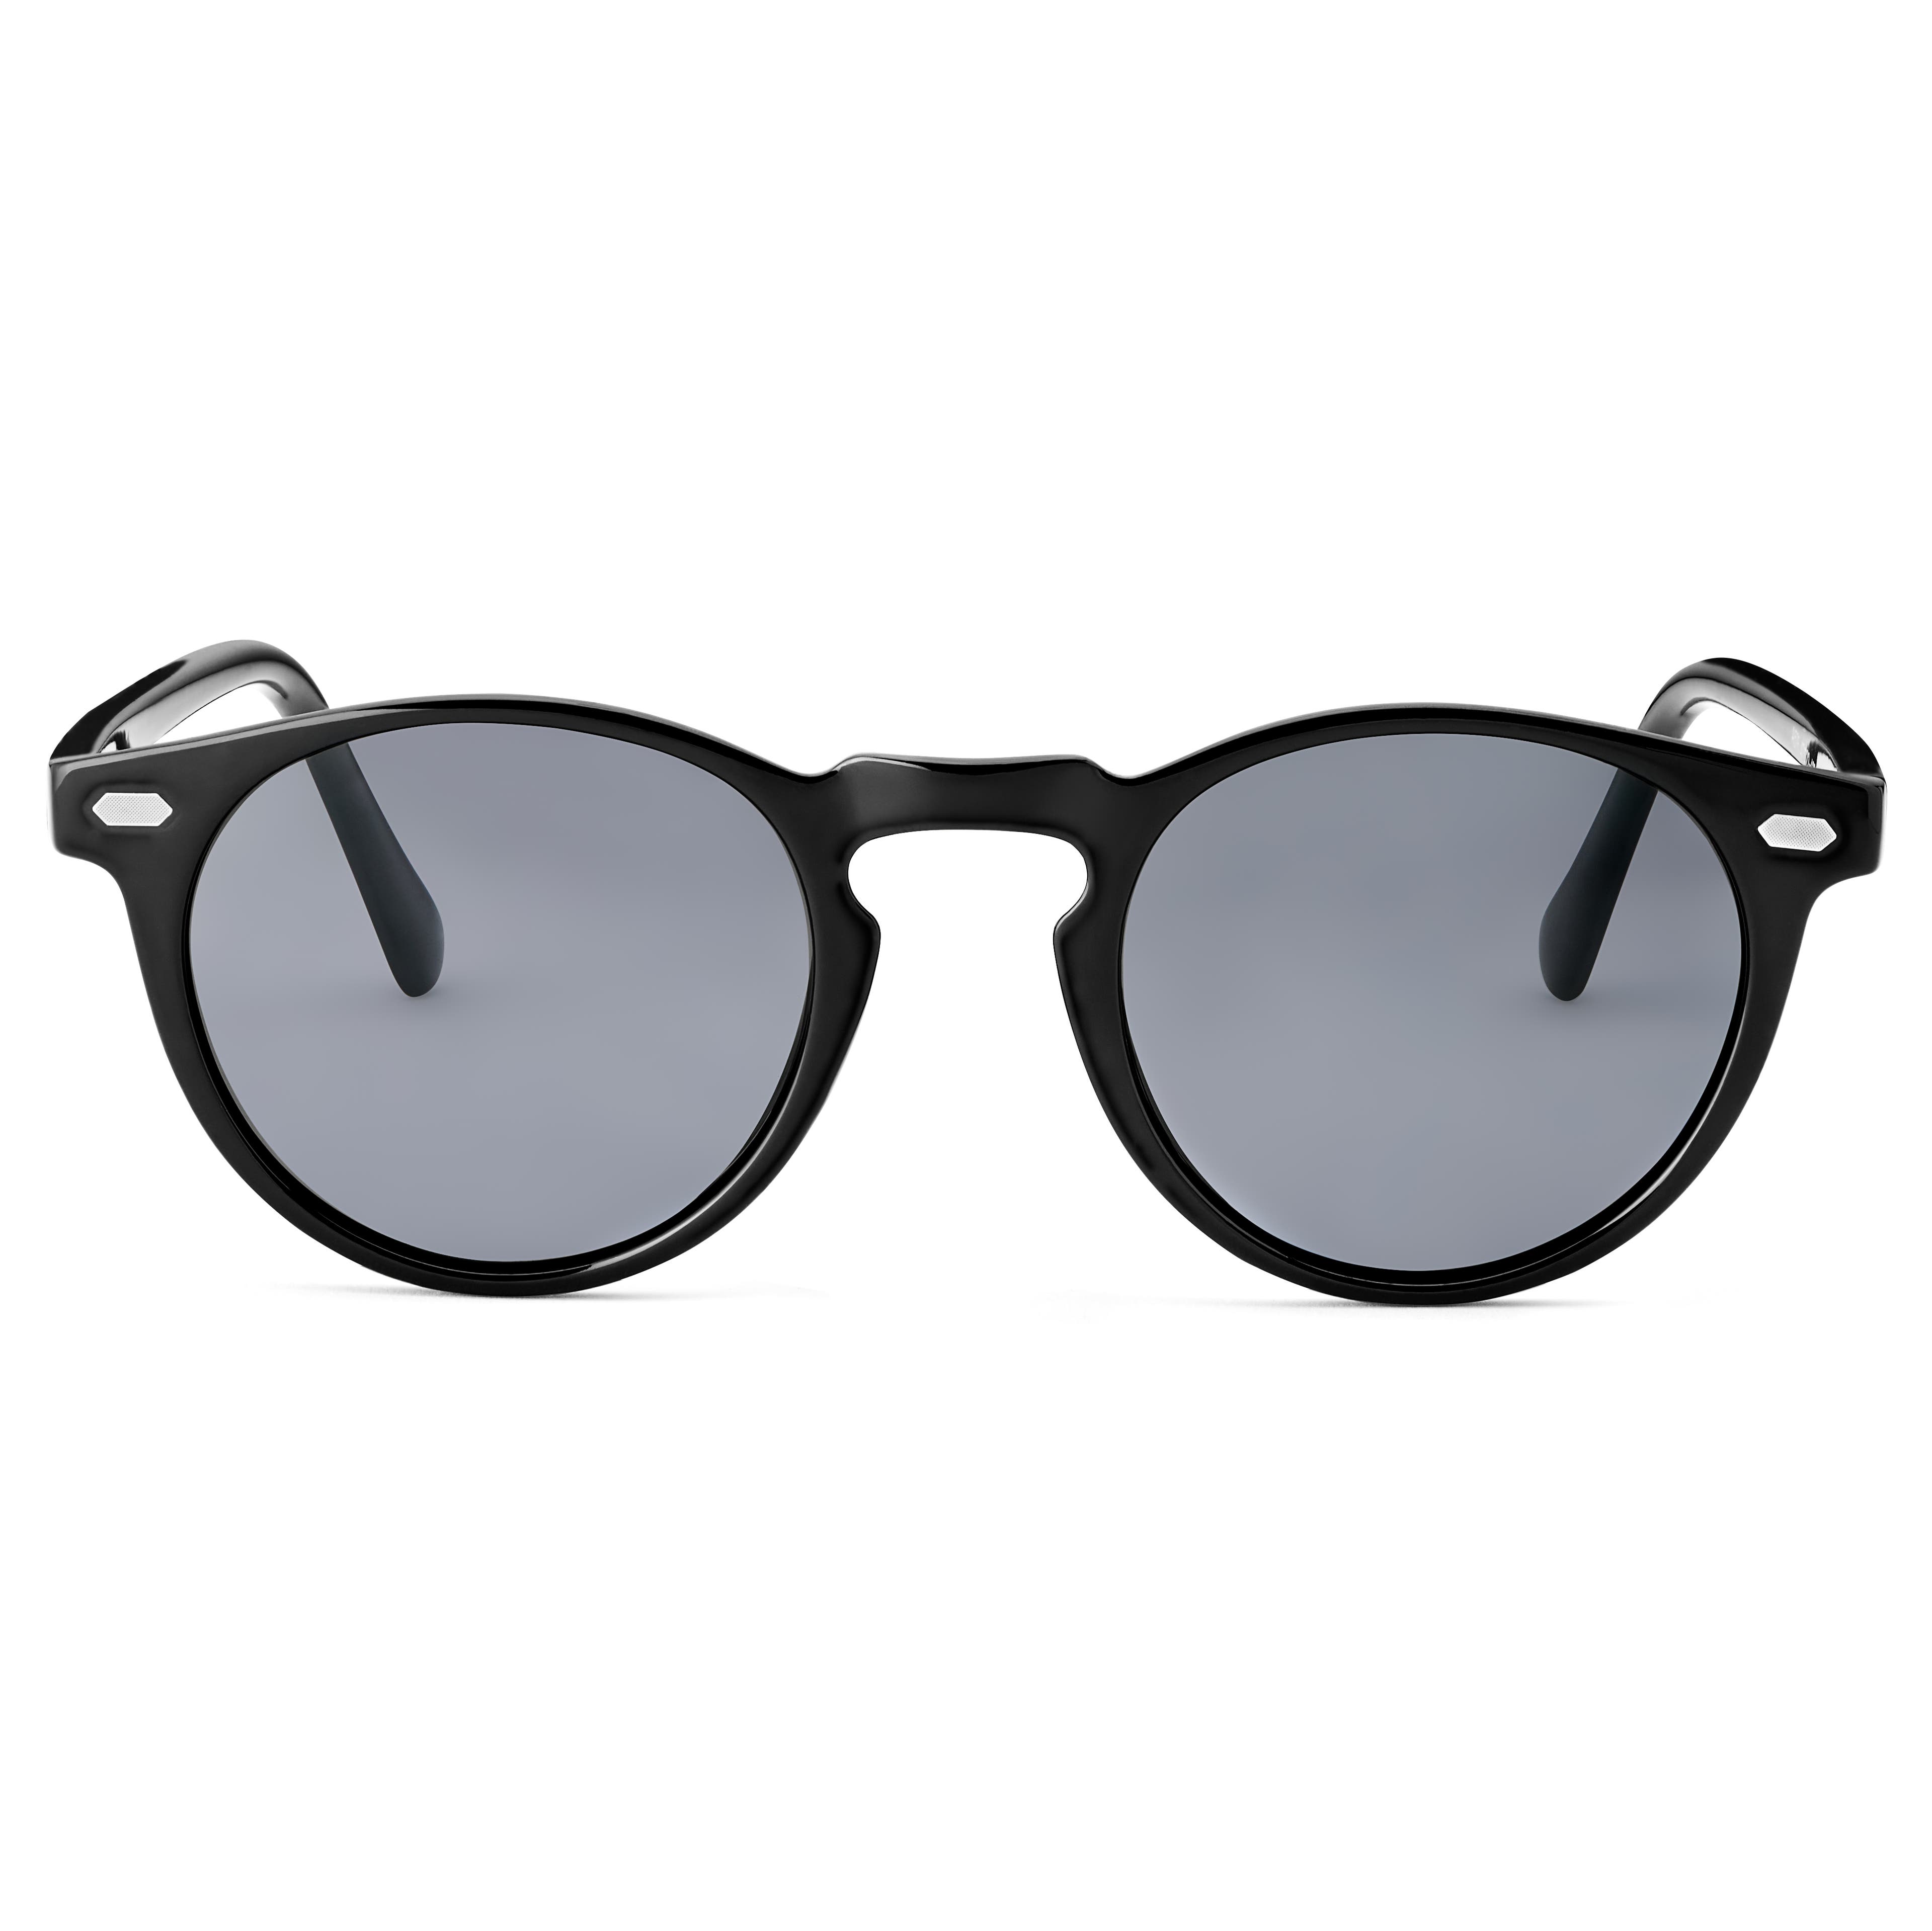 Gafas de sol retro redondas polarizadas en negro